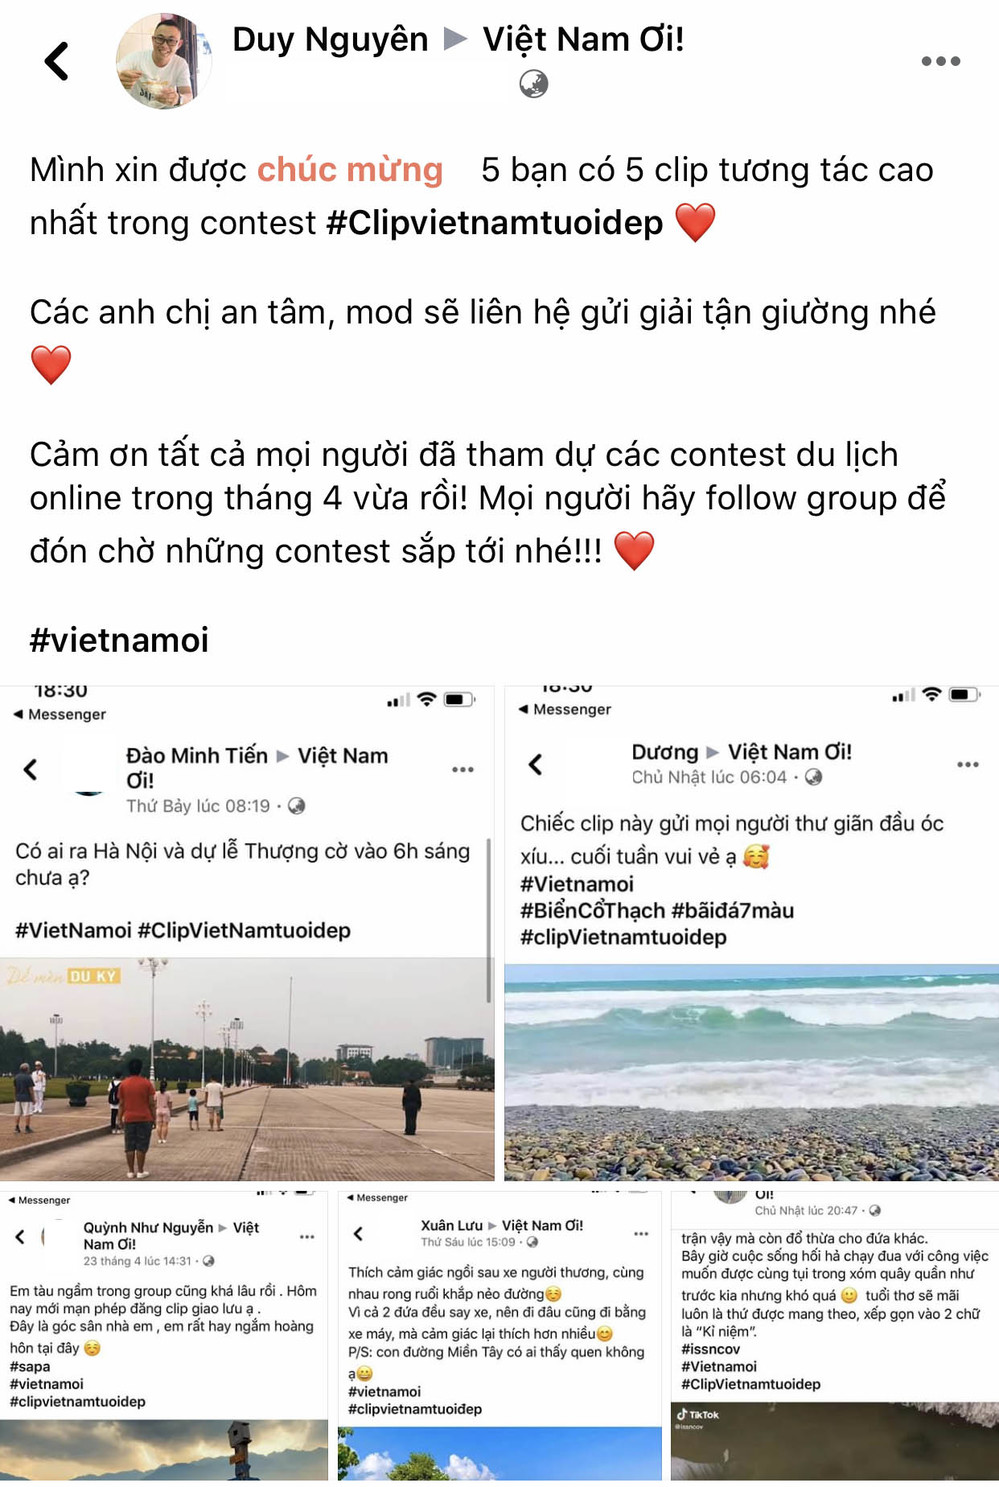  
Công bố kết quả contest Việt Nam Tươi Đẹp với 5 video xuất sắc nhất.